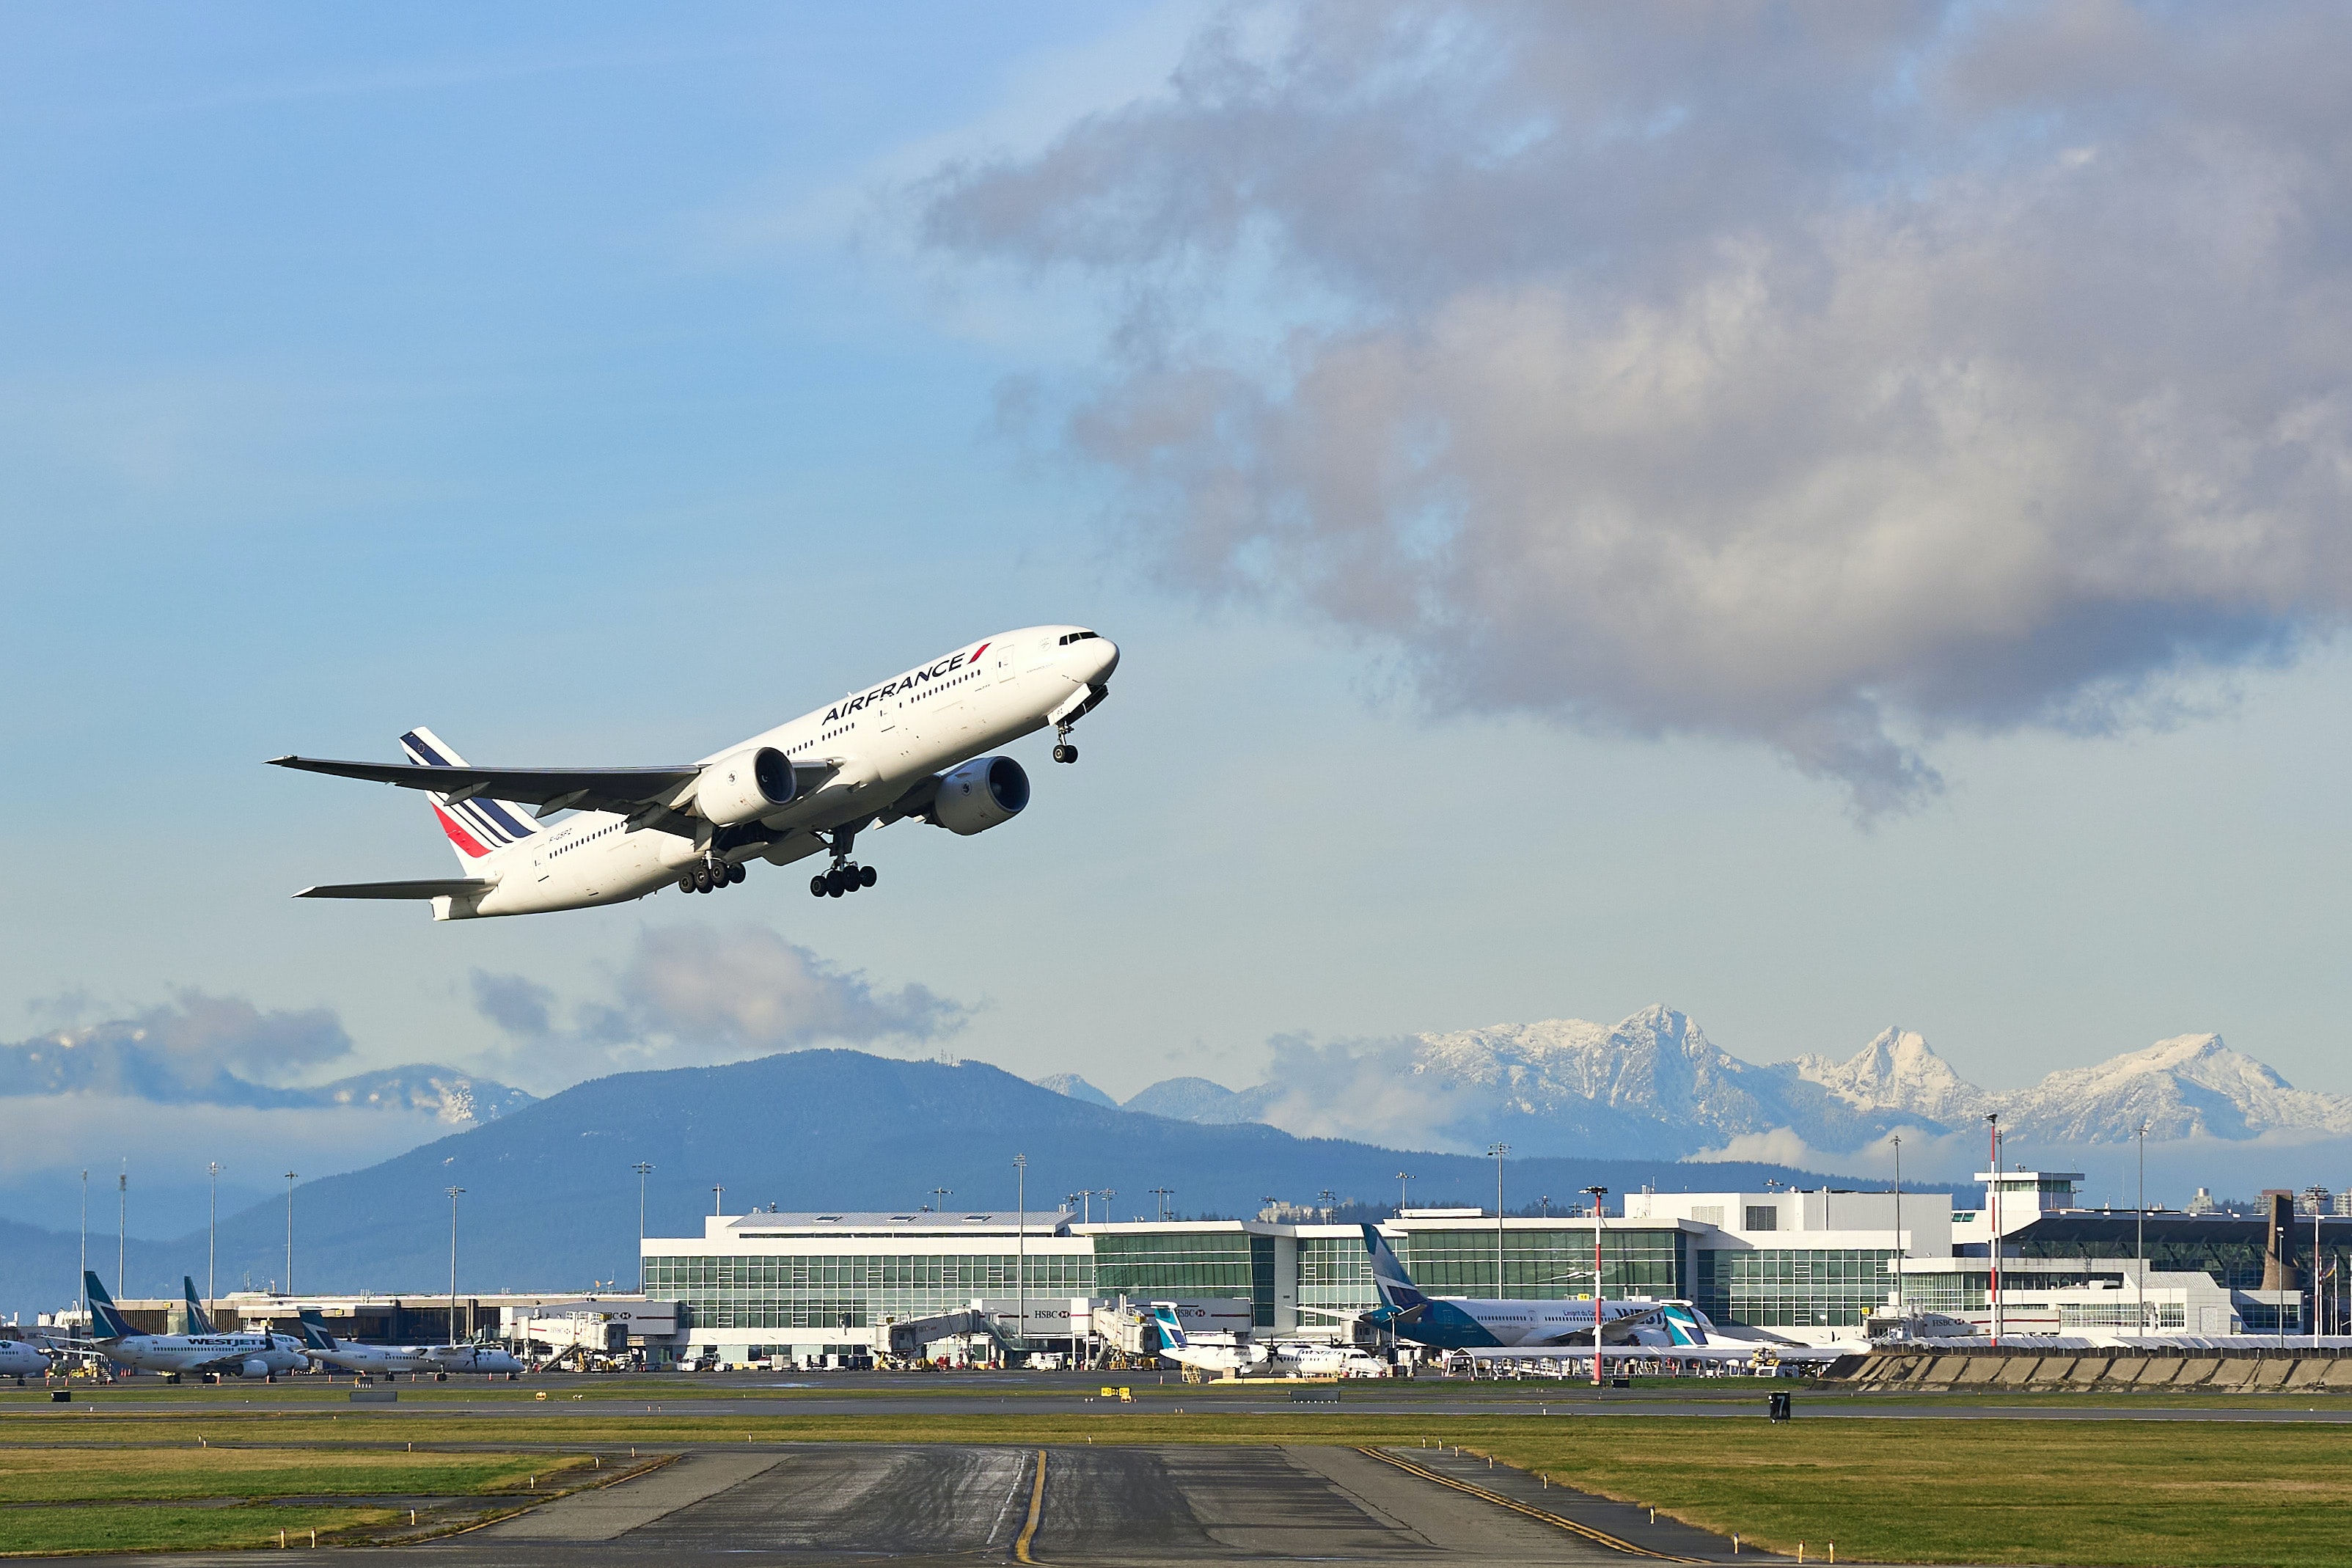 Ein Flugzeug hebt vor der beeindruckenden Kulisse des Flughafens in Vancouver ab, im Hintergrund sieht man Berge.